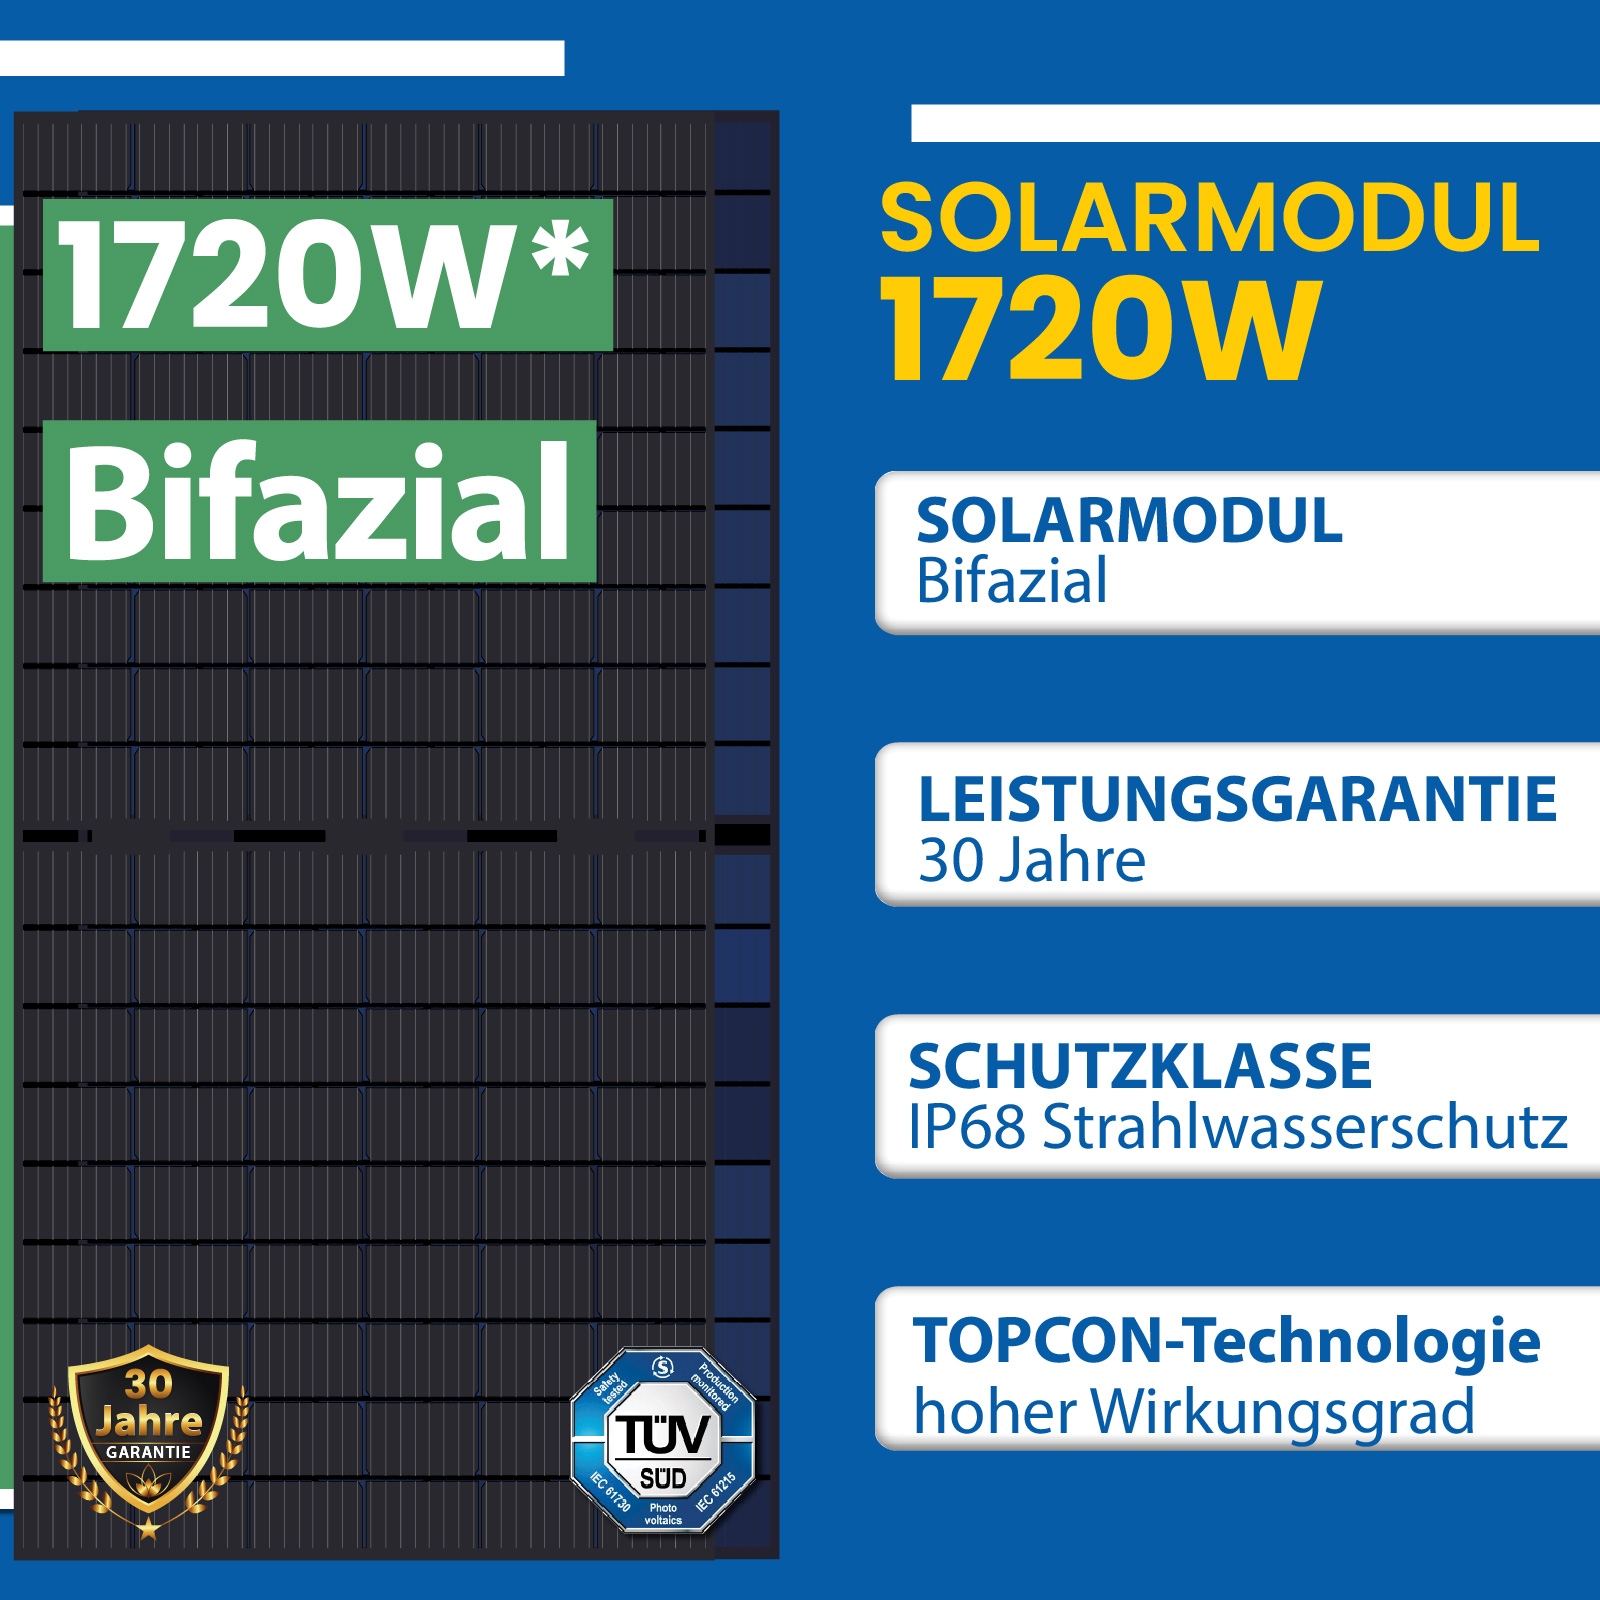 1720W Photovoltaik Balkonkraftwerk mit 430W Bifaziale Solarmodule, Hoymiles  HMS-1600-4T Wechselrichter und 10m Wielandstecker